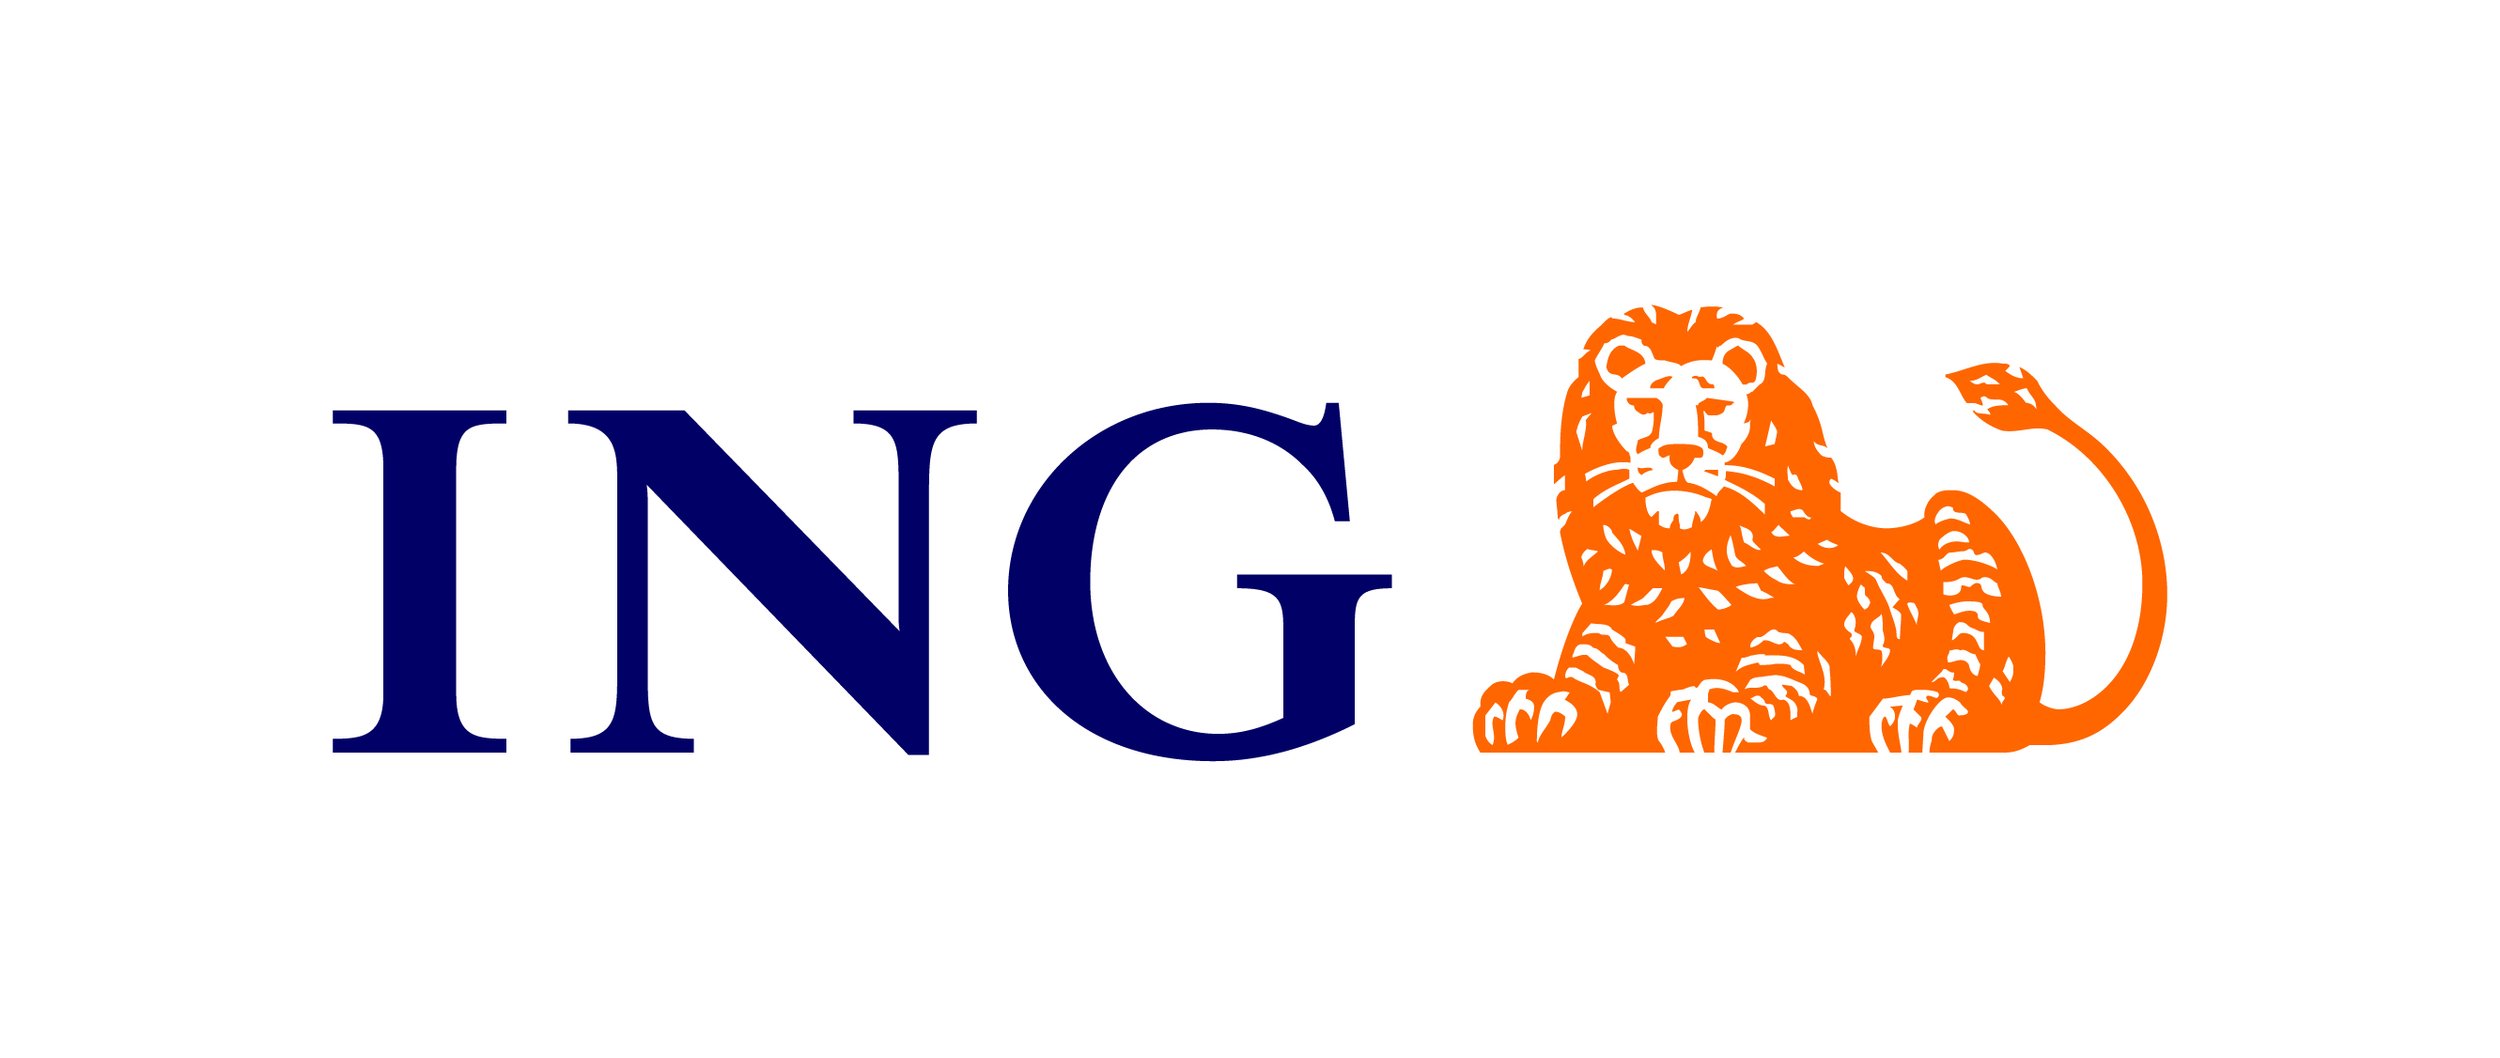 ING_logo.jpg